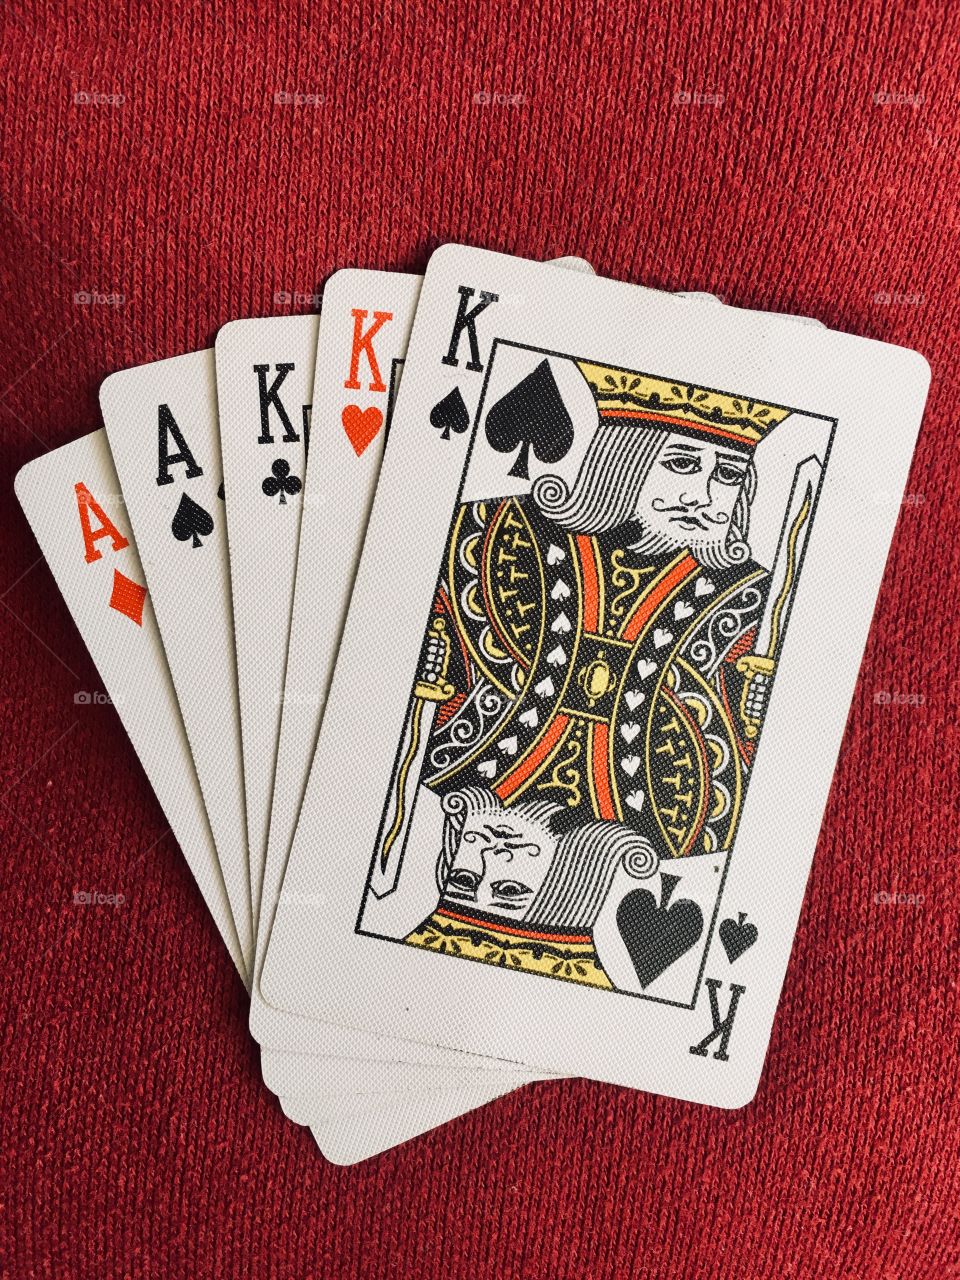 Poker hand- Full house